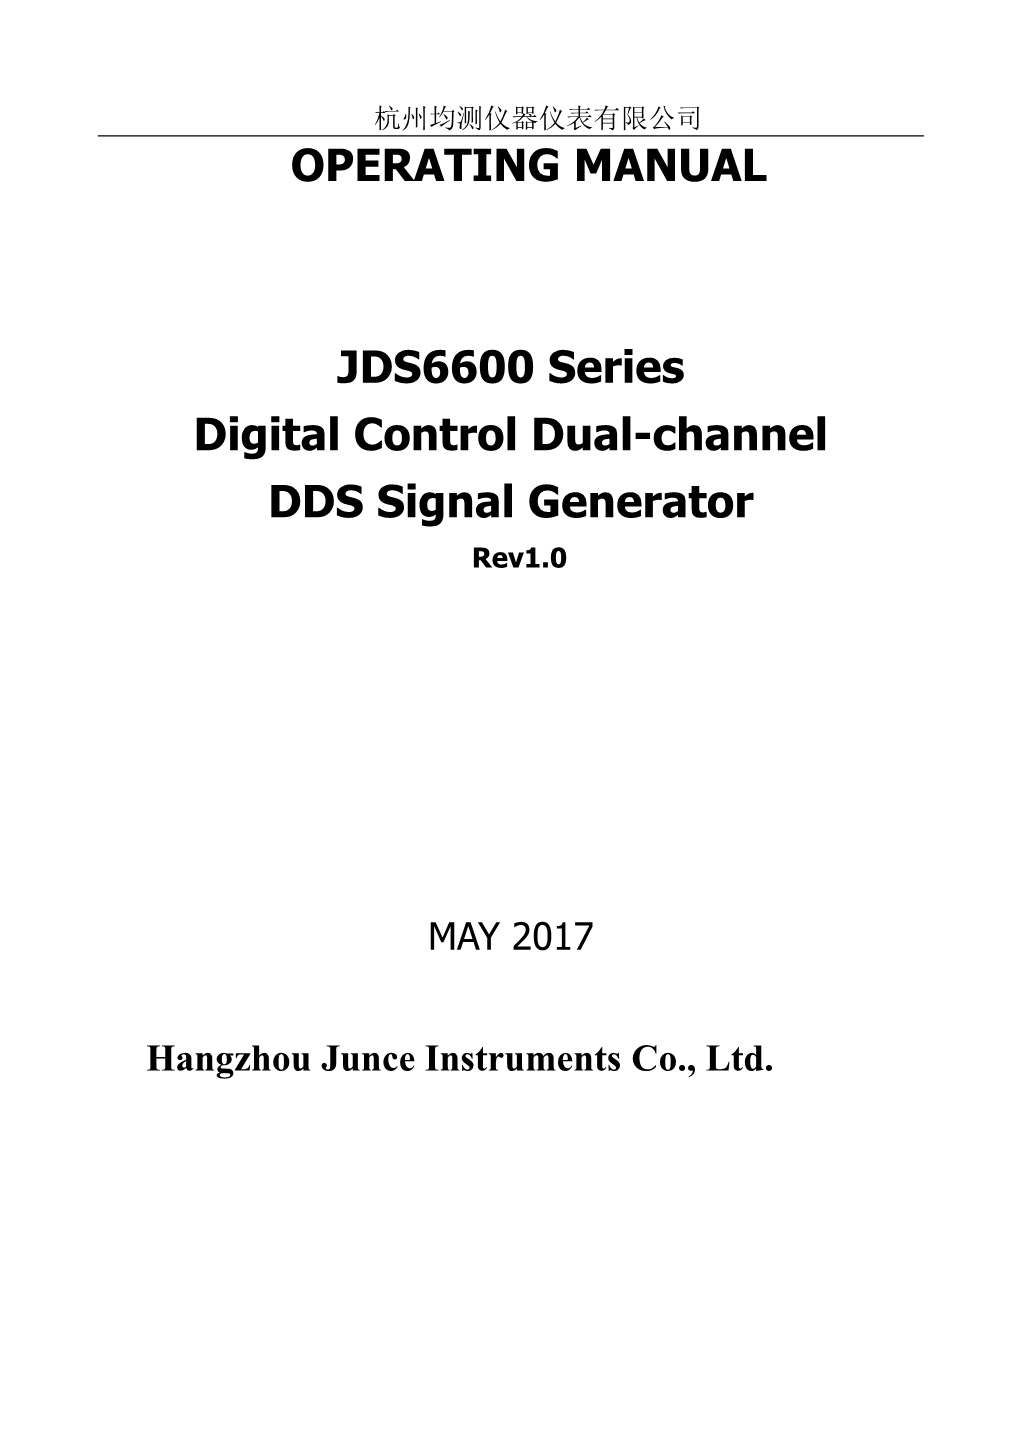 Digital Control Dual-Channel